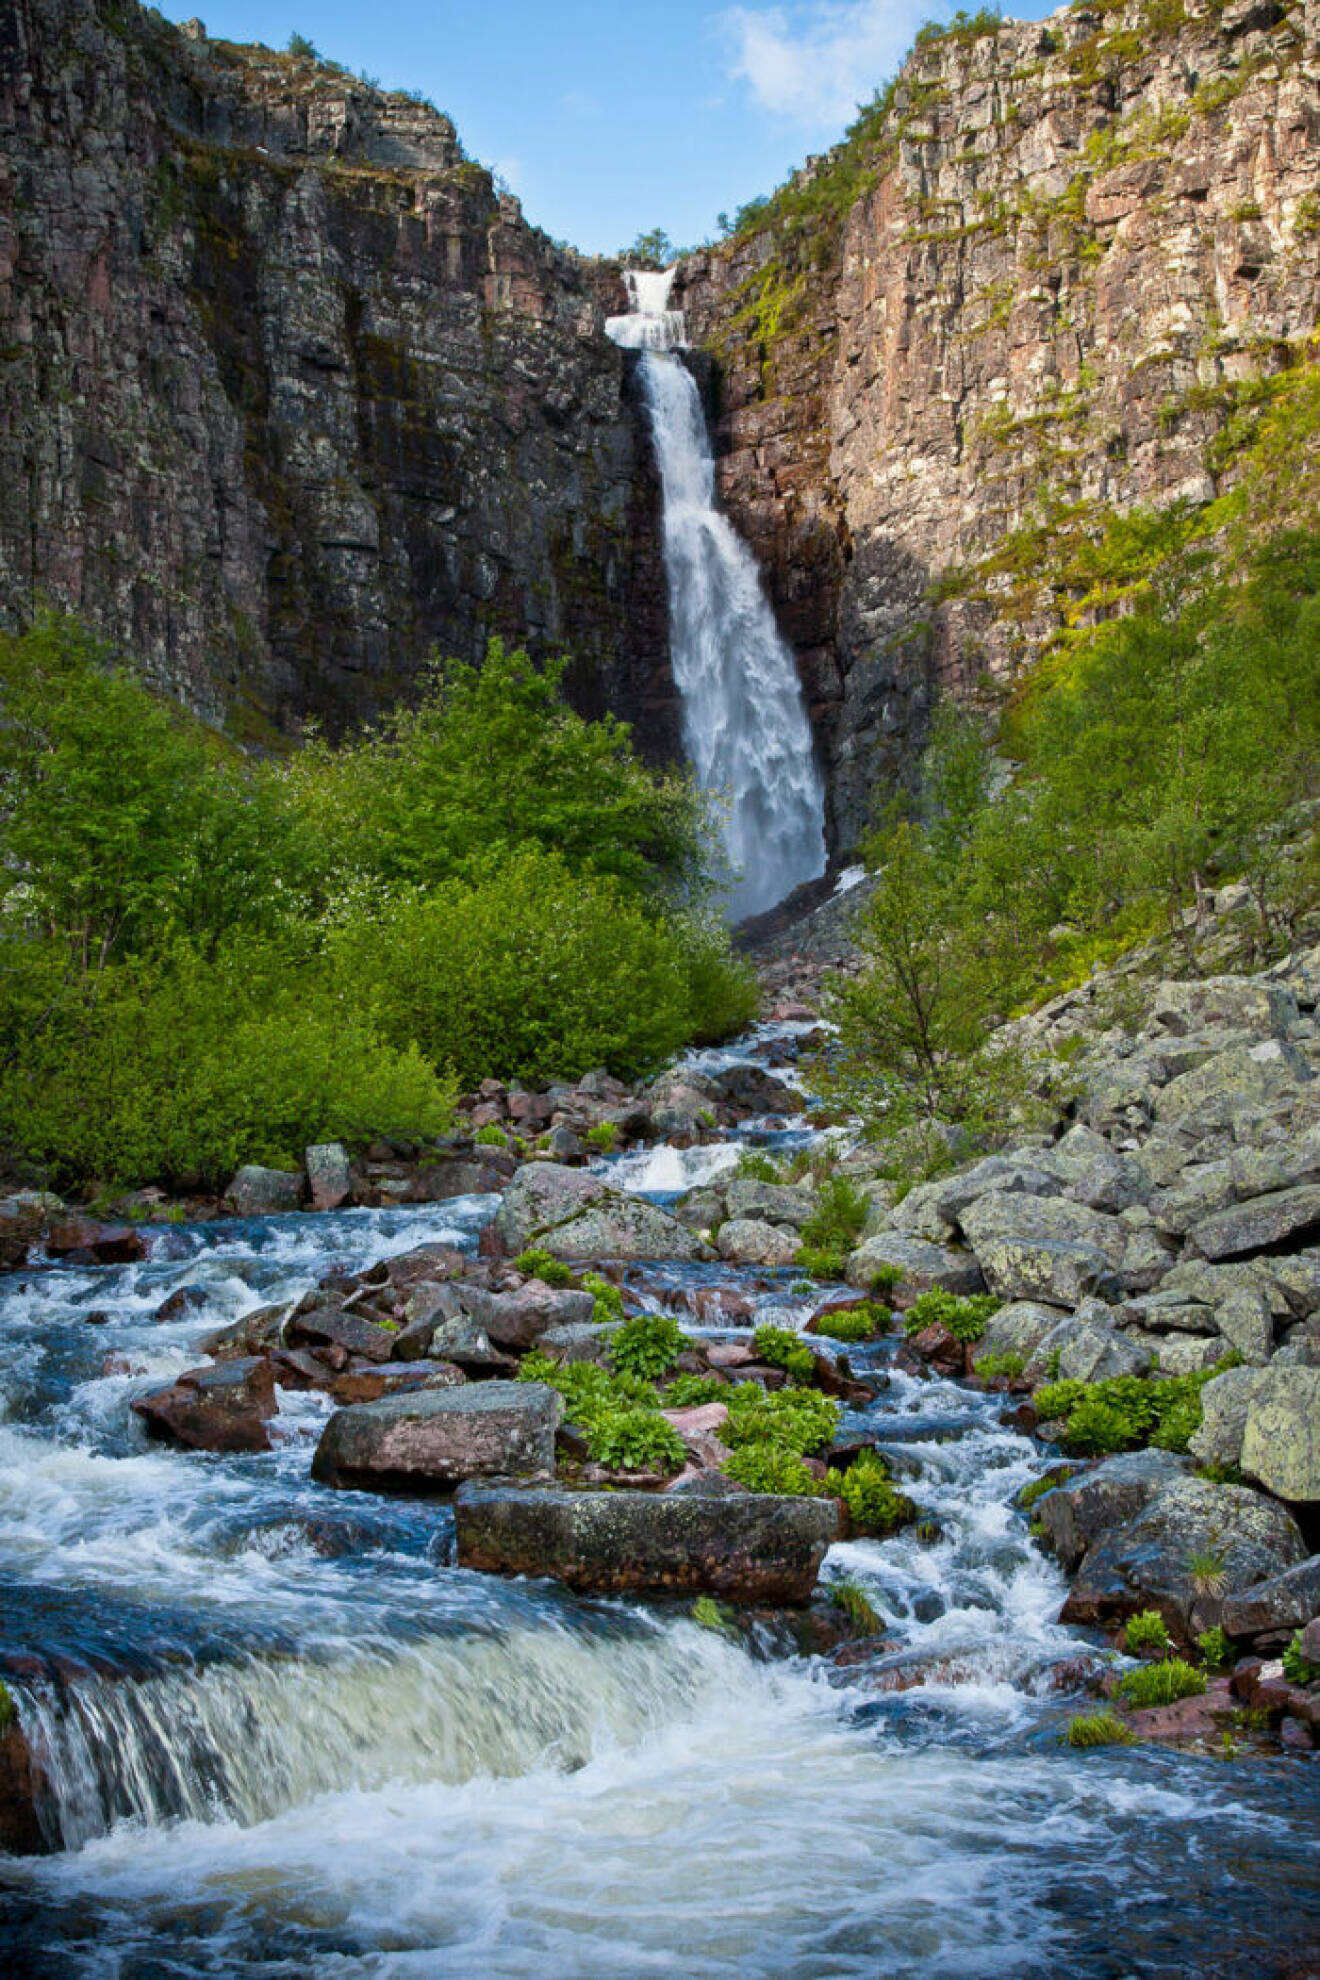 Sveriges högsta vattenfall, Njupeskä i Dalarna.